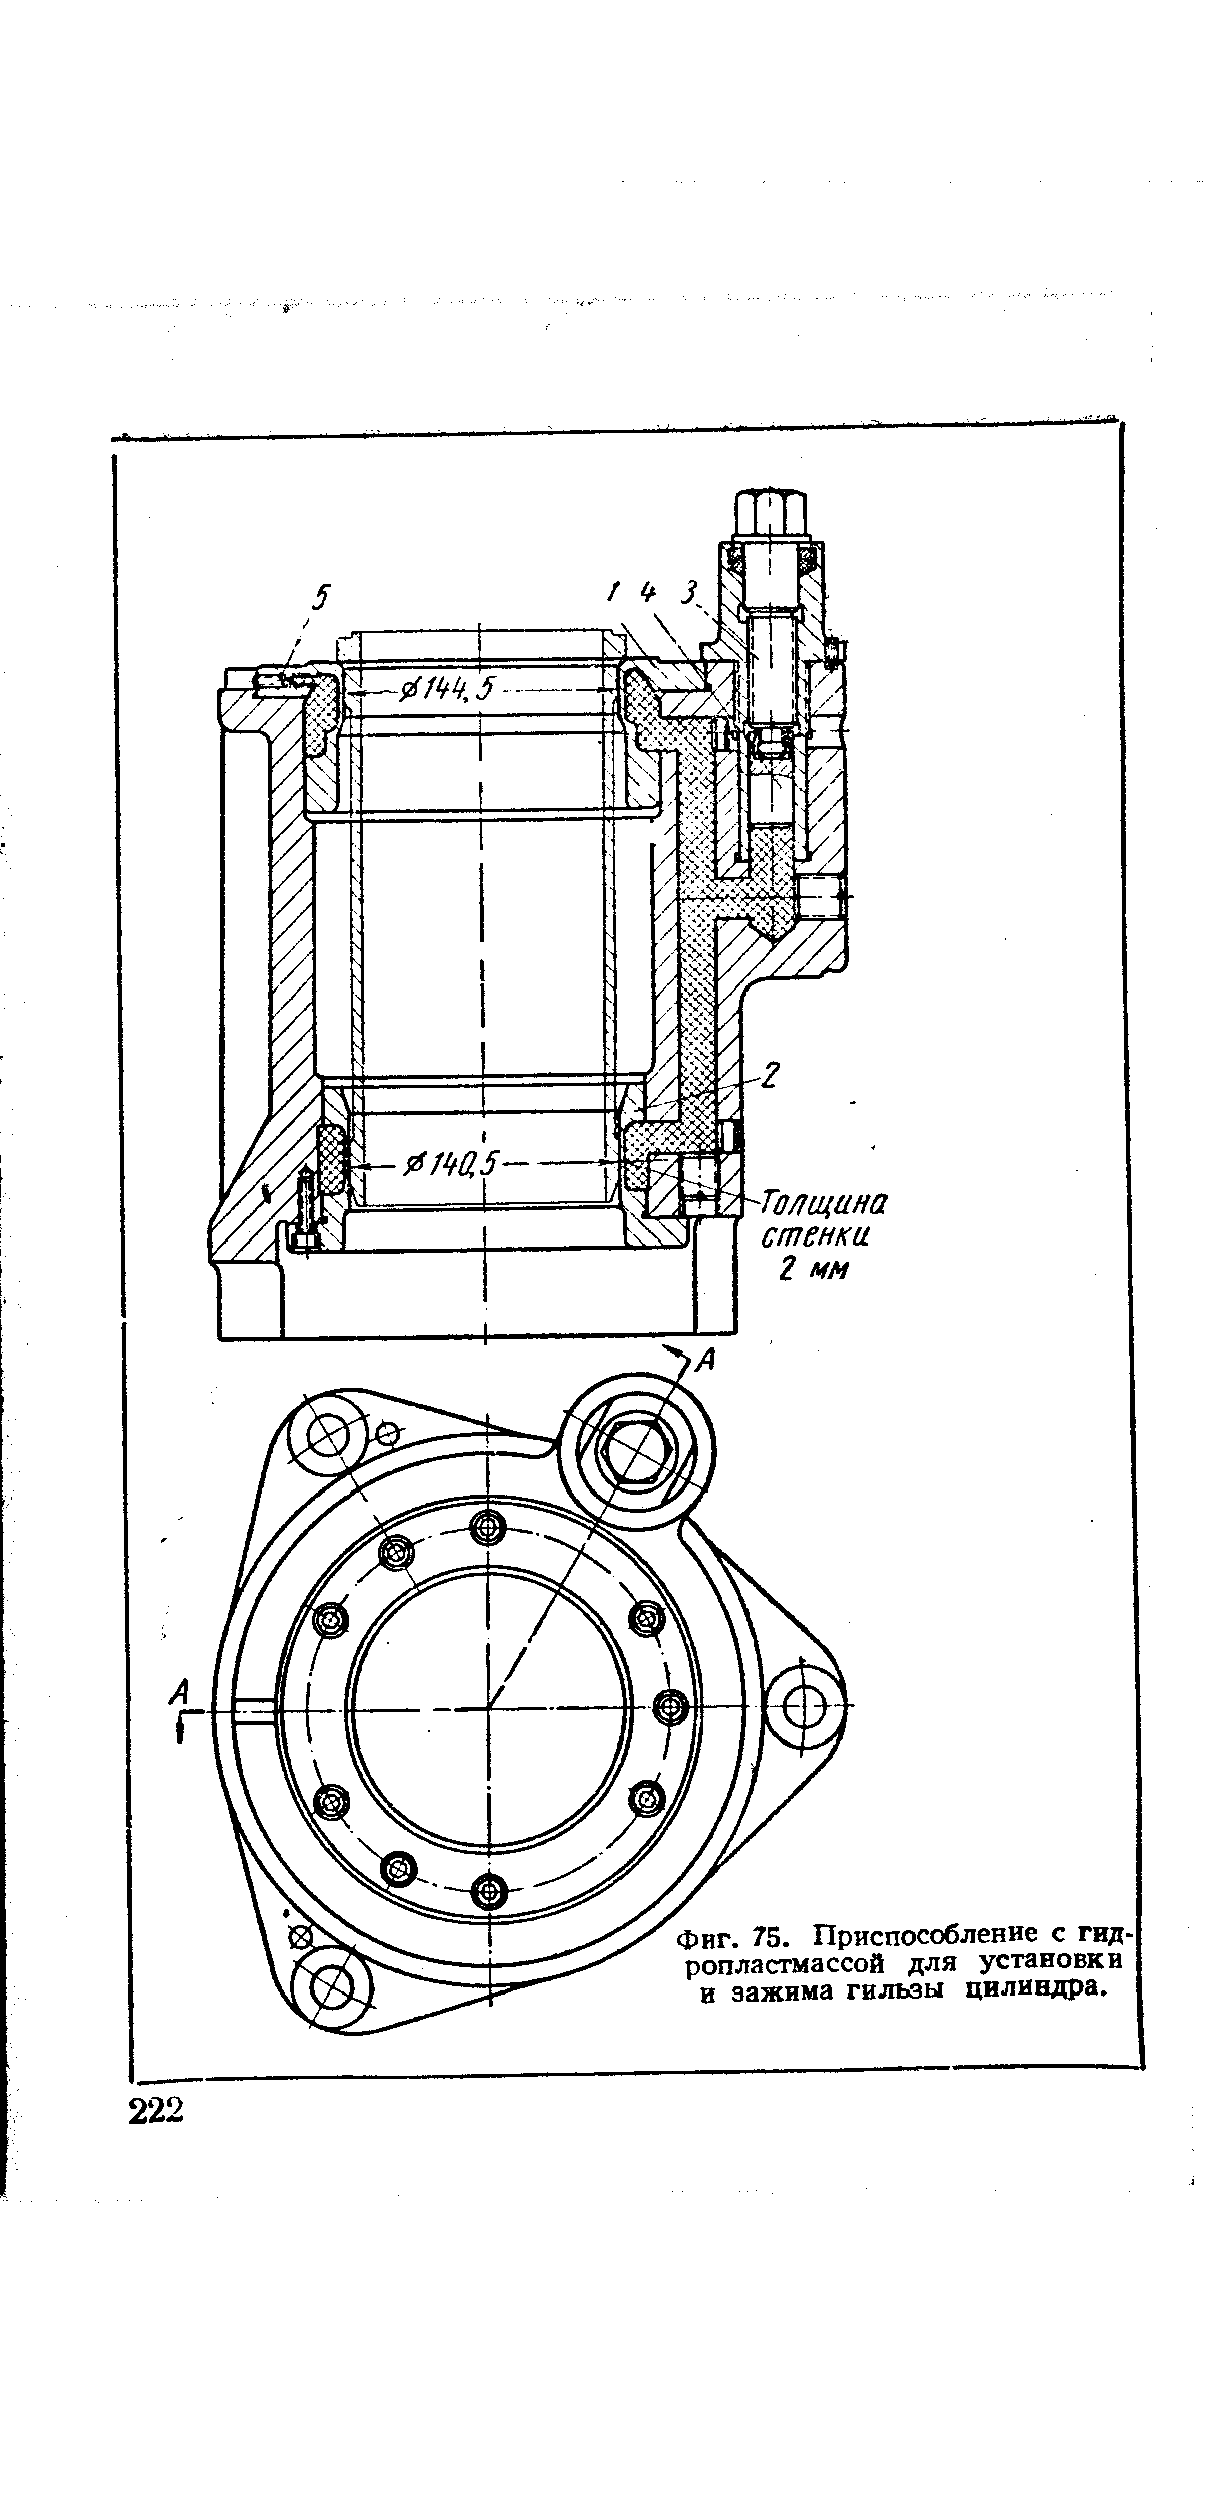 Фиг. 75. Приспособление с гидропластмассой для установки в зажима гильзы цилиндра.
